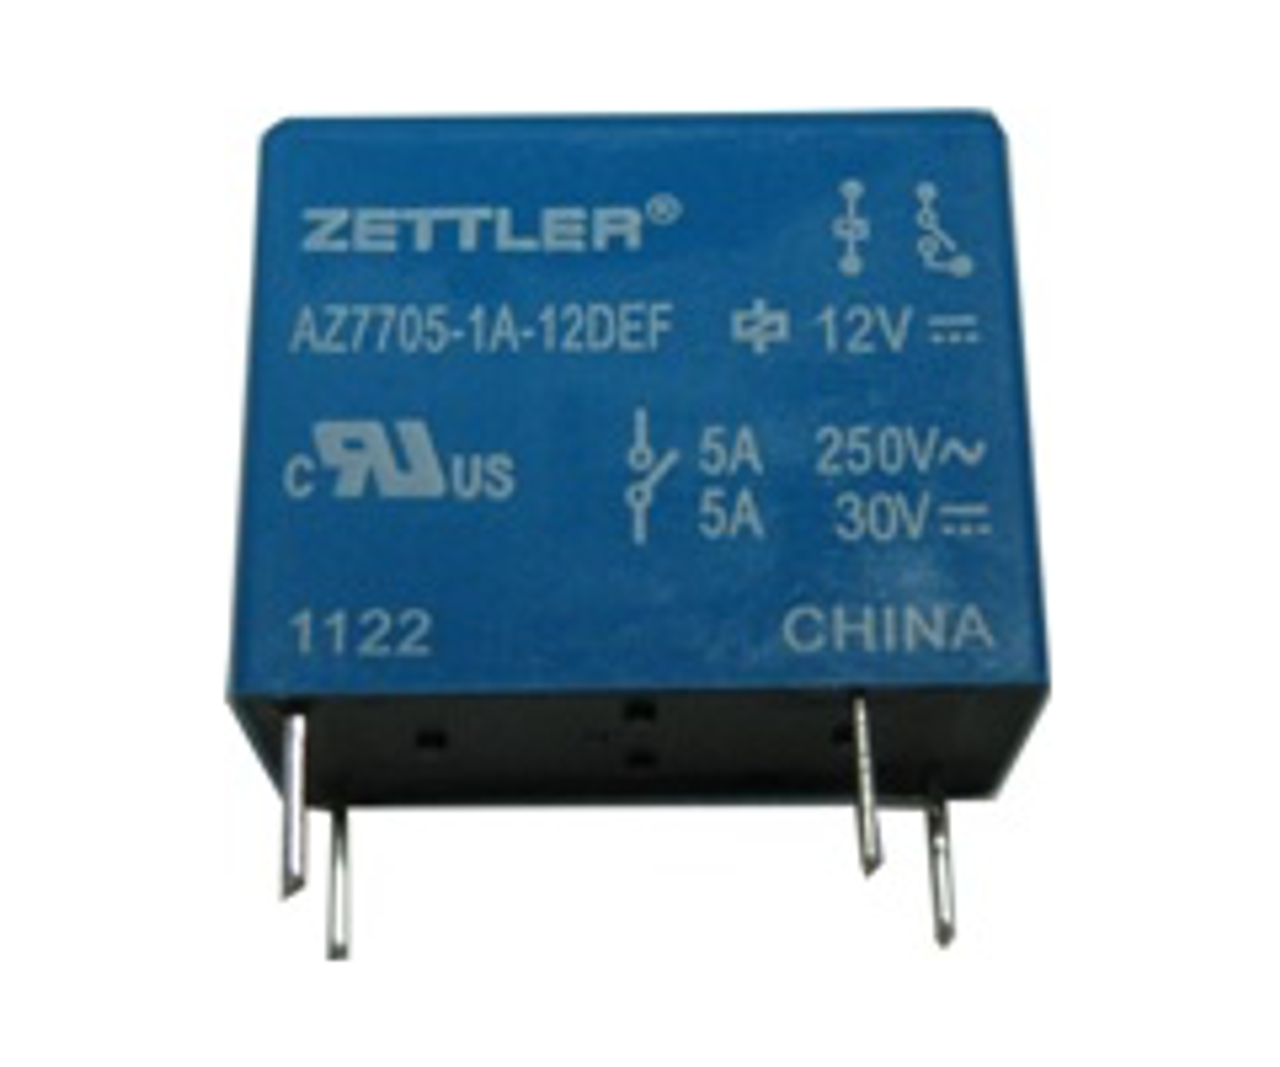 American Zettler AZ7705-1A-6DSF Power Relay